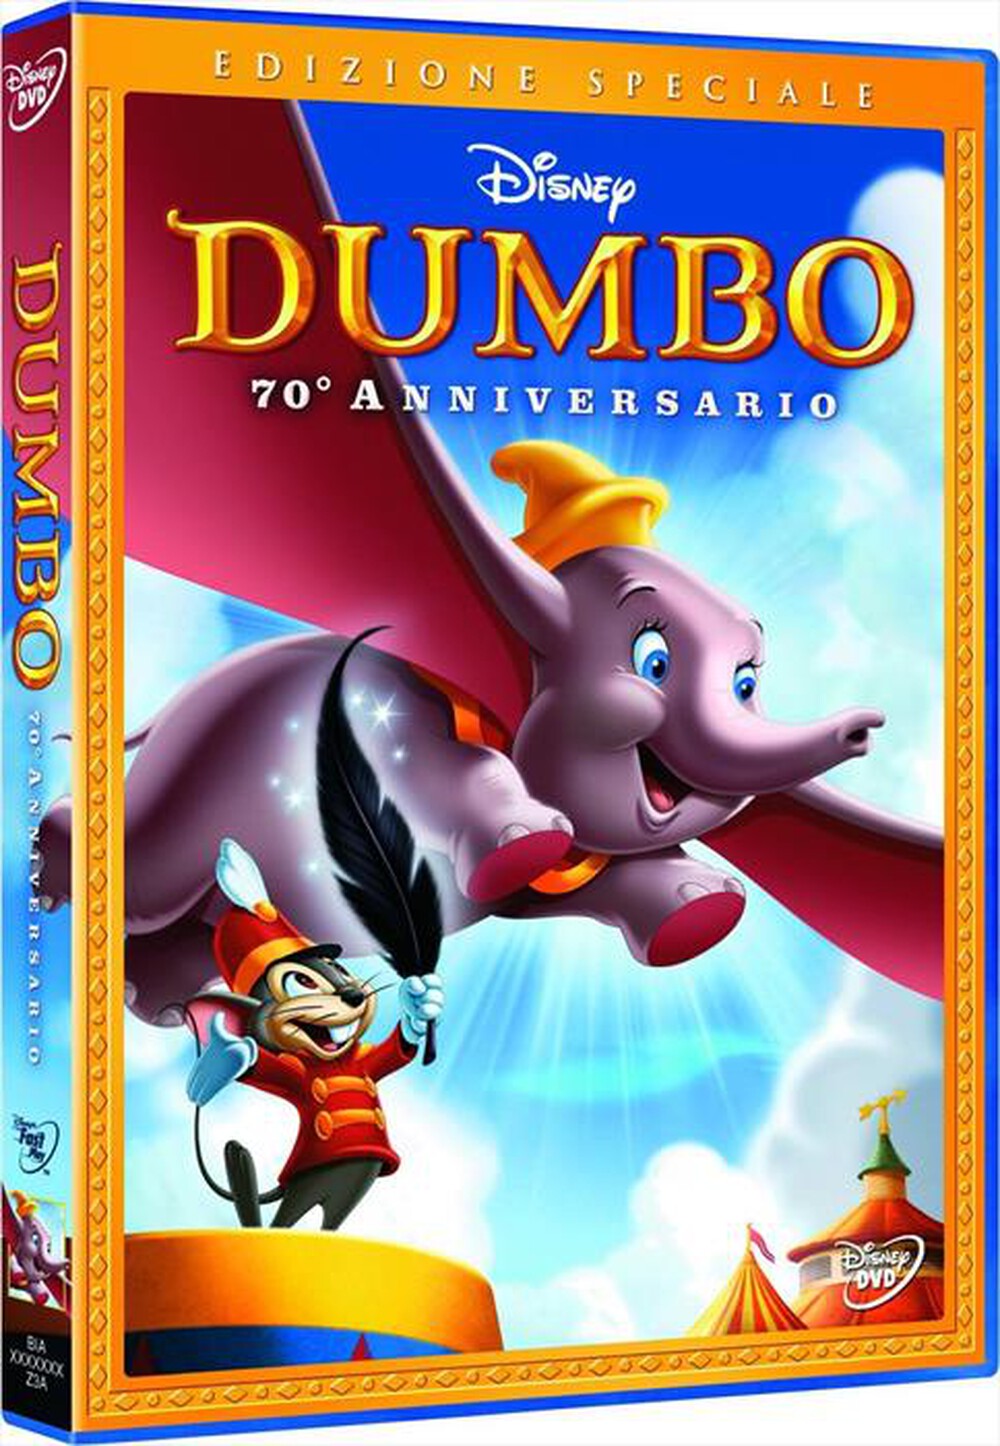 "EAGLE PICTURES - Dumbo (SE) (70o Anniversario)"